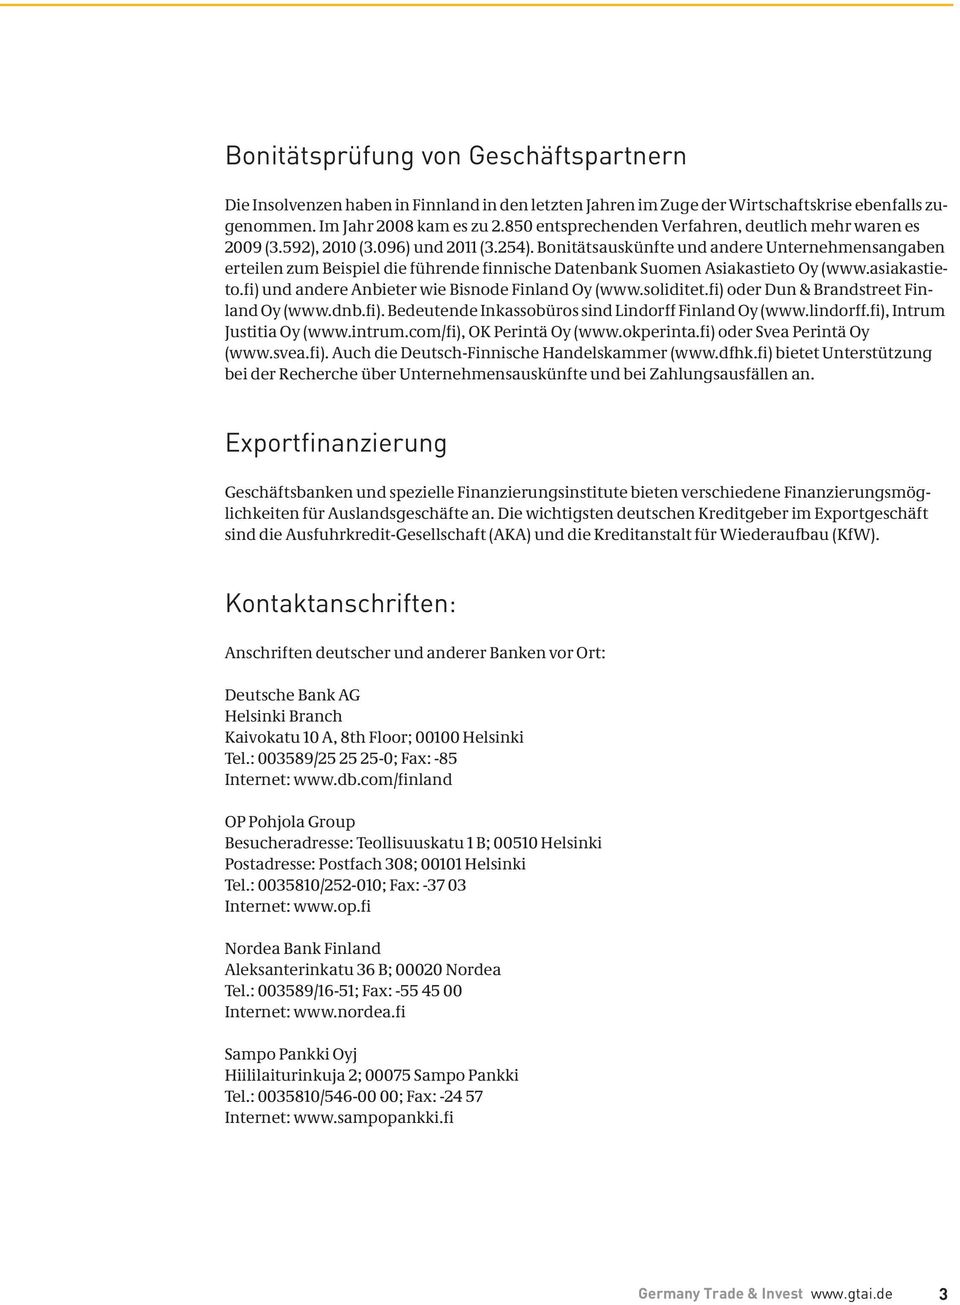 Bonitätsauskünfte und andere Unternehmensangaben erteilen zum Beispiel die führende finnische Datenbank Suomen Asiakastieto Oy (www.asiakastieto.fi) und andere Anbieter wie Bisnode Finland Oy (www.